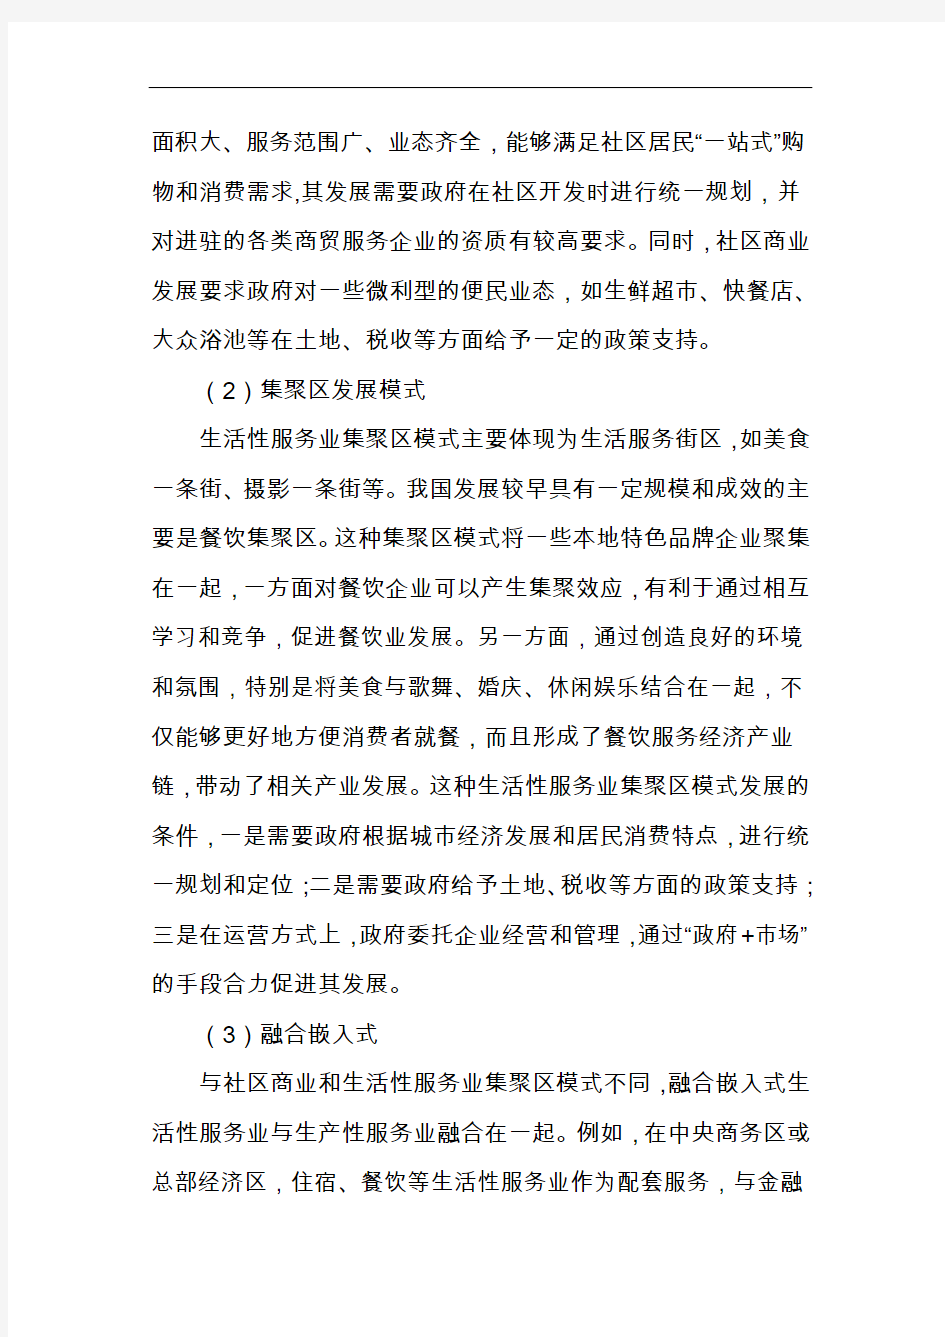 上海生活性服务业发展目标和重点举措研究方案